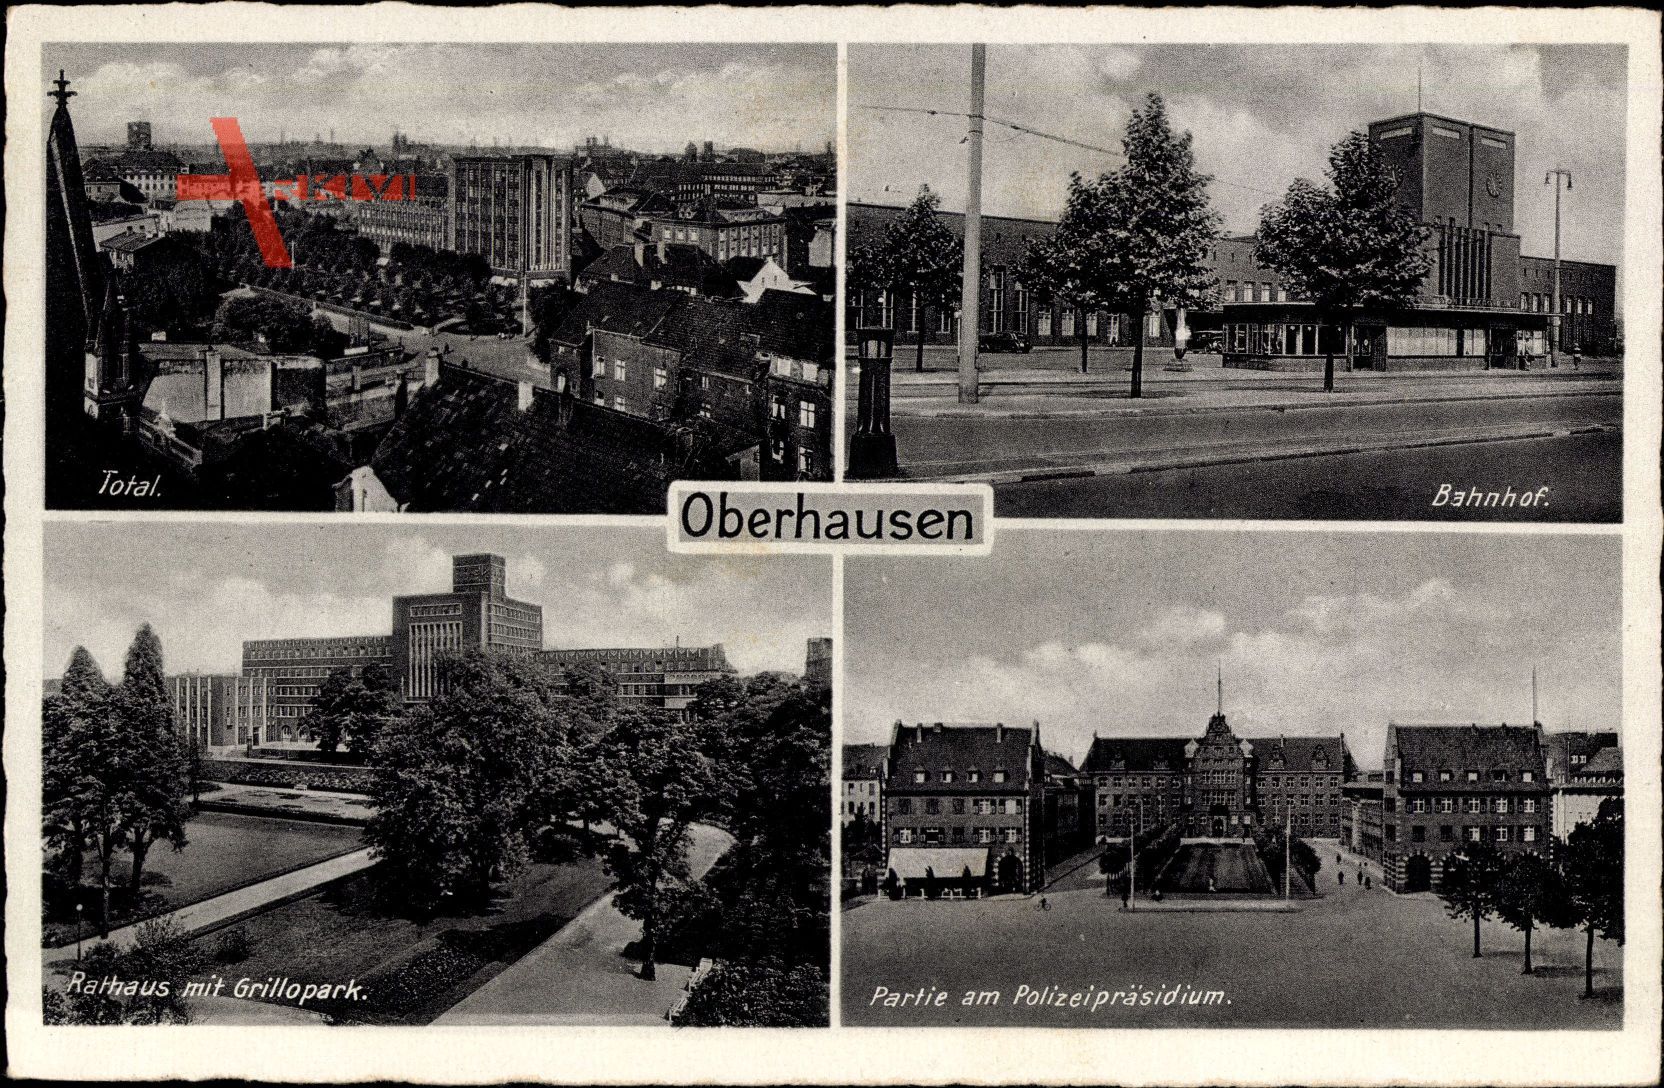 Oberhausen am Rhein, Bahnhof, Rathaus, Polizeipräsidium